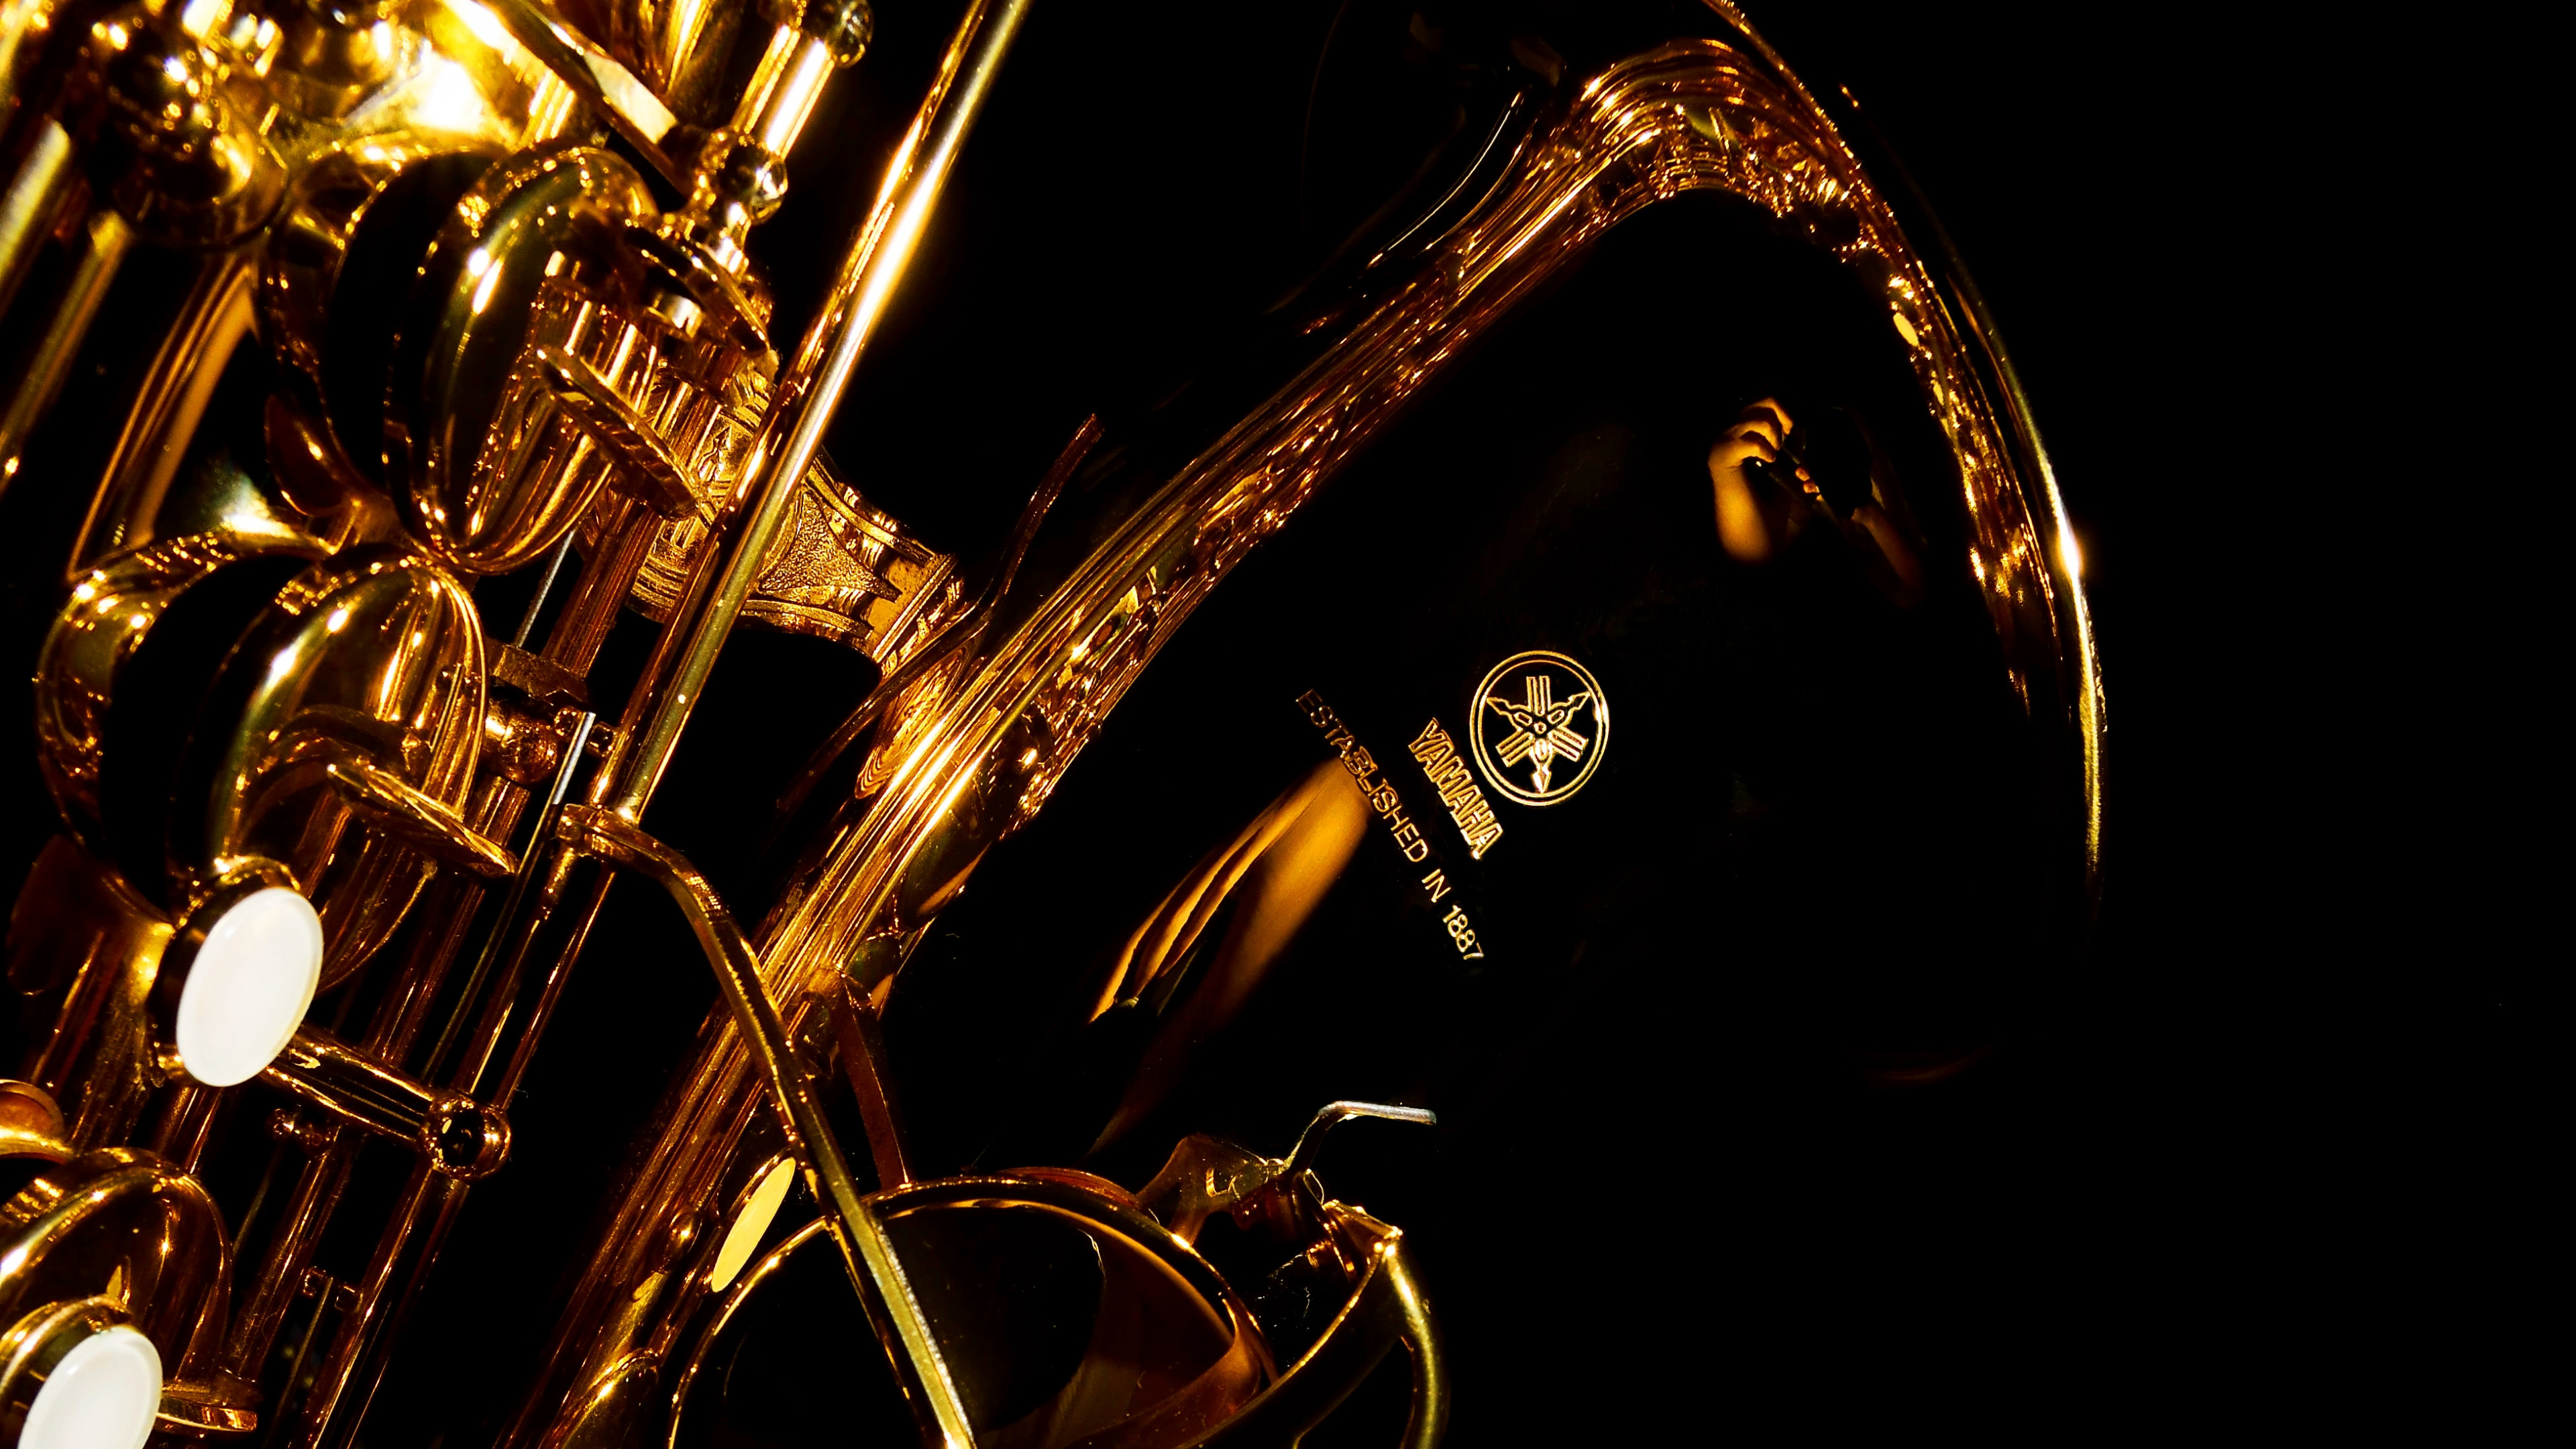 Trompete, Saxophon, Messing-instrument, Wind Instrument, Holzblasinstrument. Wallpaper in 3840x2160 Resolution